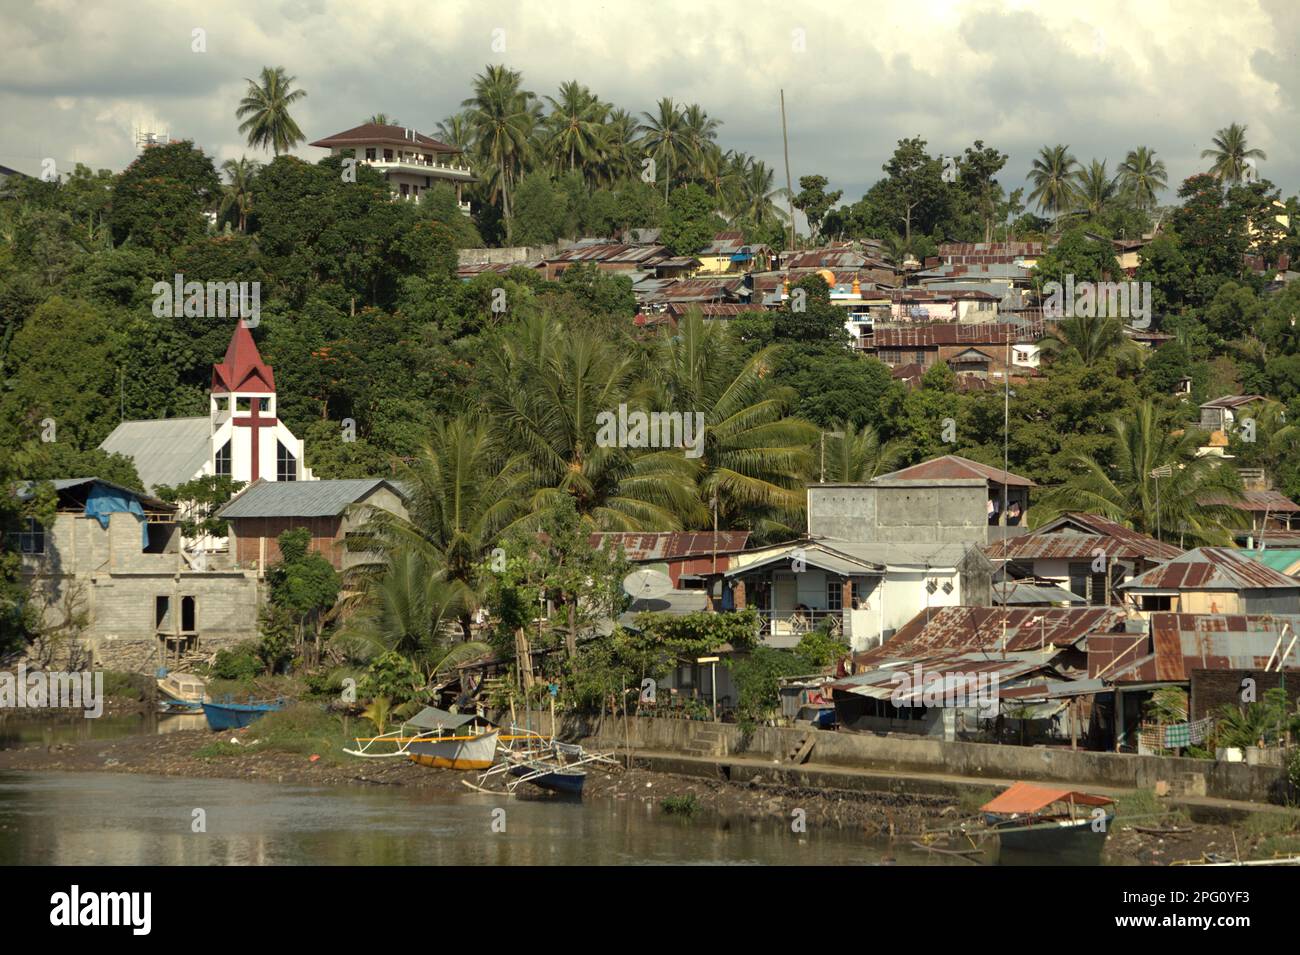 Des colonies, un bâtiment d'église et un paysage vallonné sont photographiés en premier plan de la rivière Tondano (rivière Manado) dans la zone côtière de la ville de Manado, au nord de Sulawesi, en Indonésie. Banque D'Images